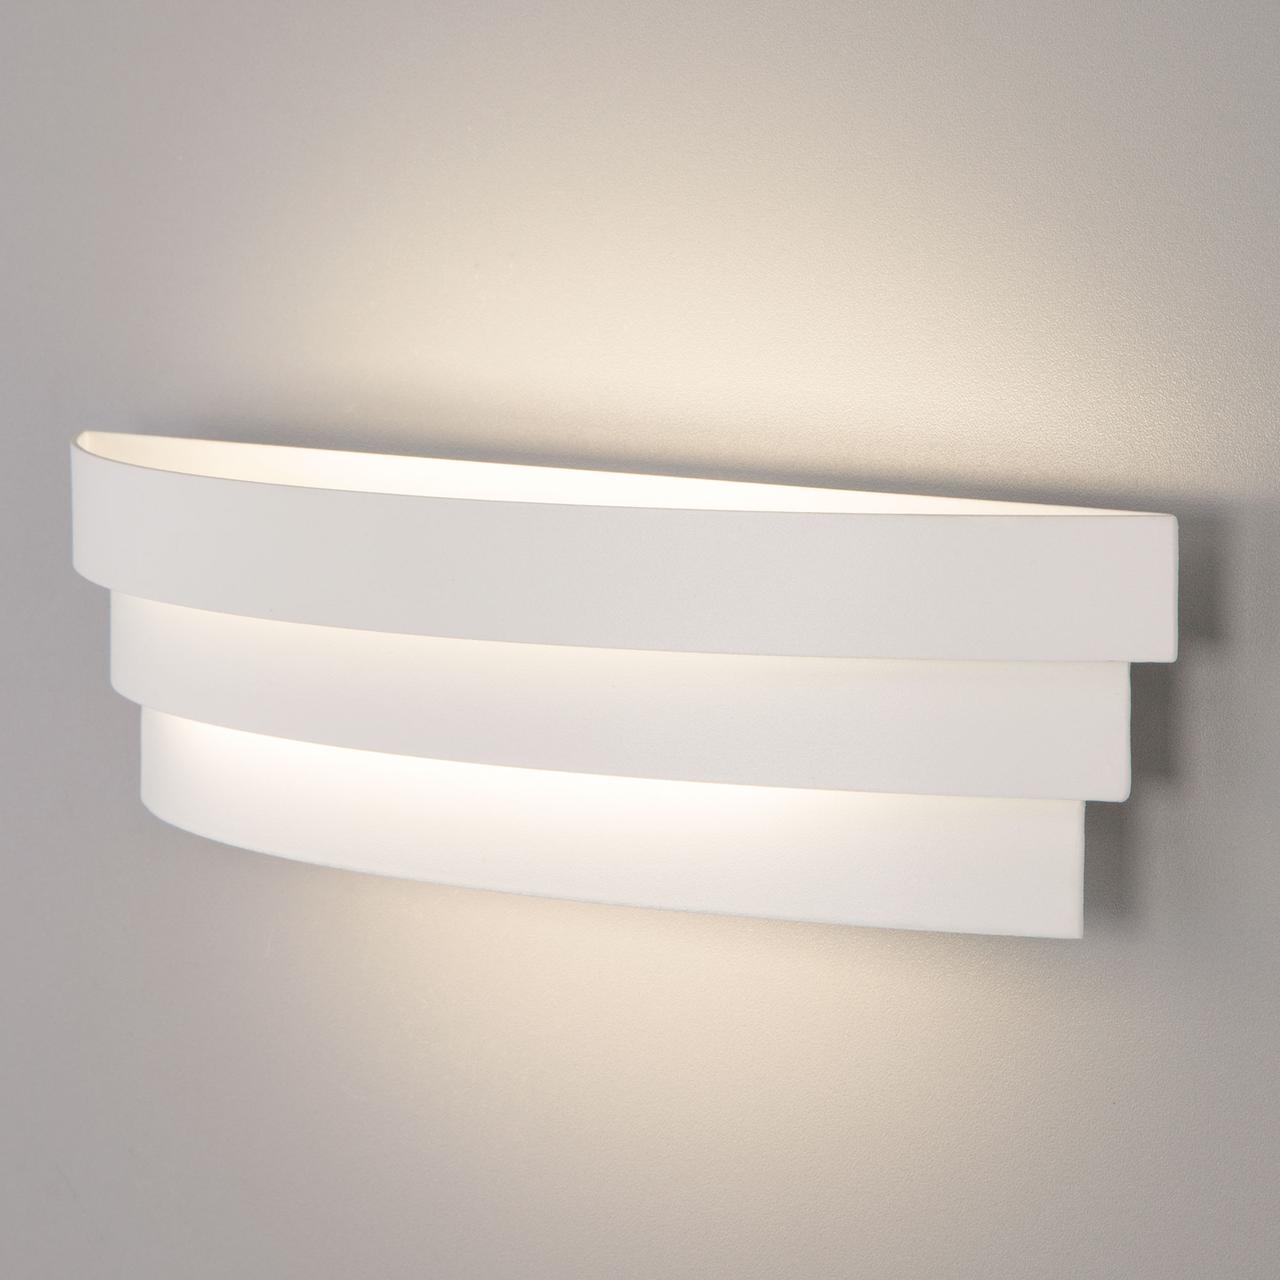 Светодиодный настенный светильник Riara LED белый (MRL LED 1012)